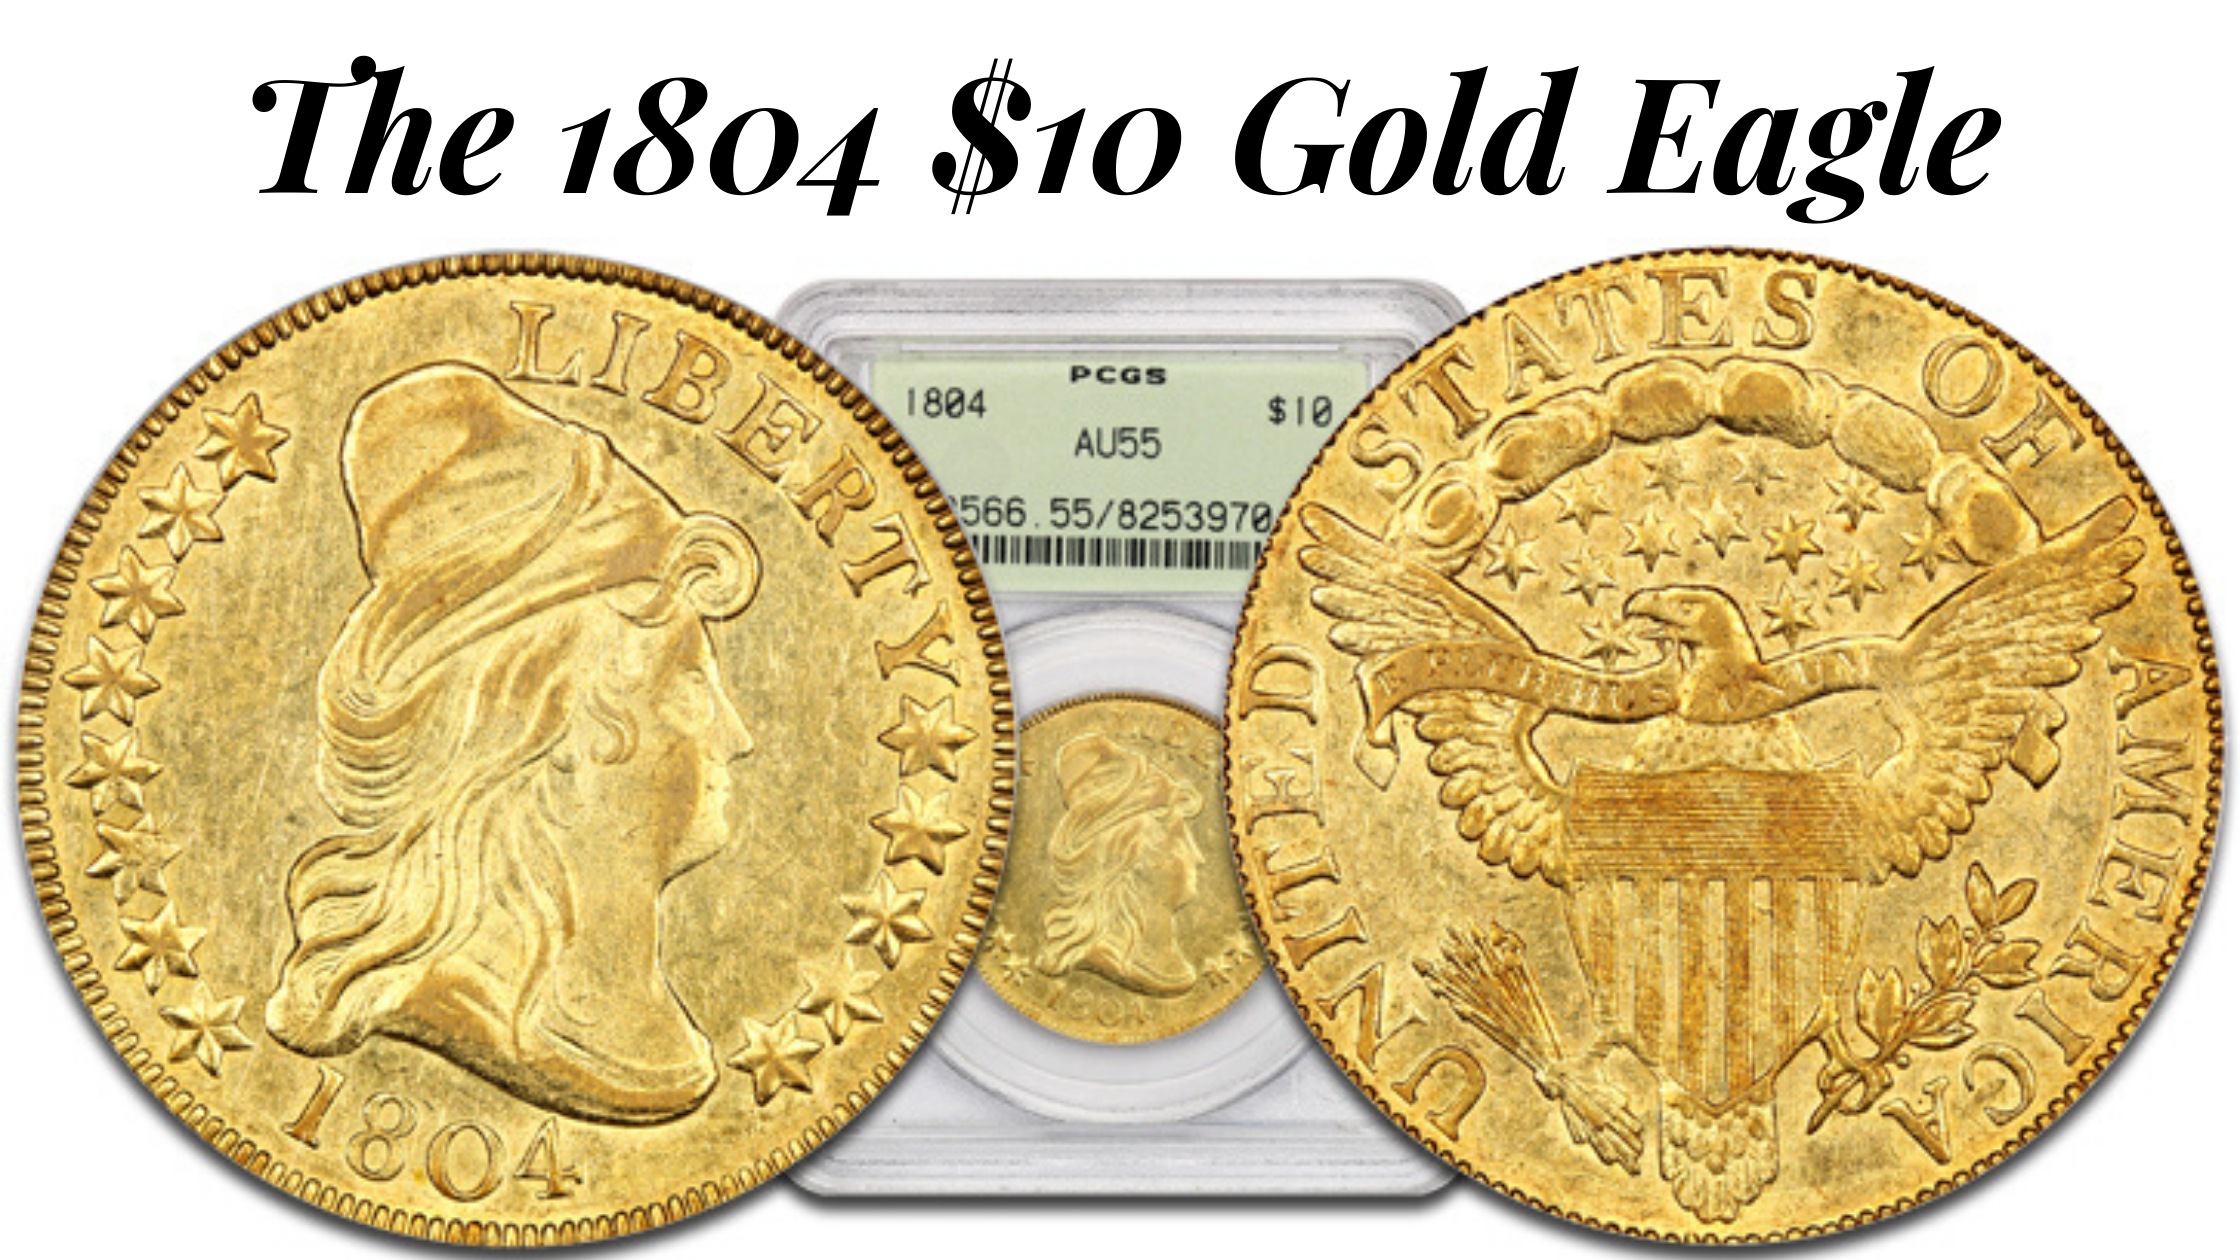 The 1804 $10 Gold Eagle